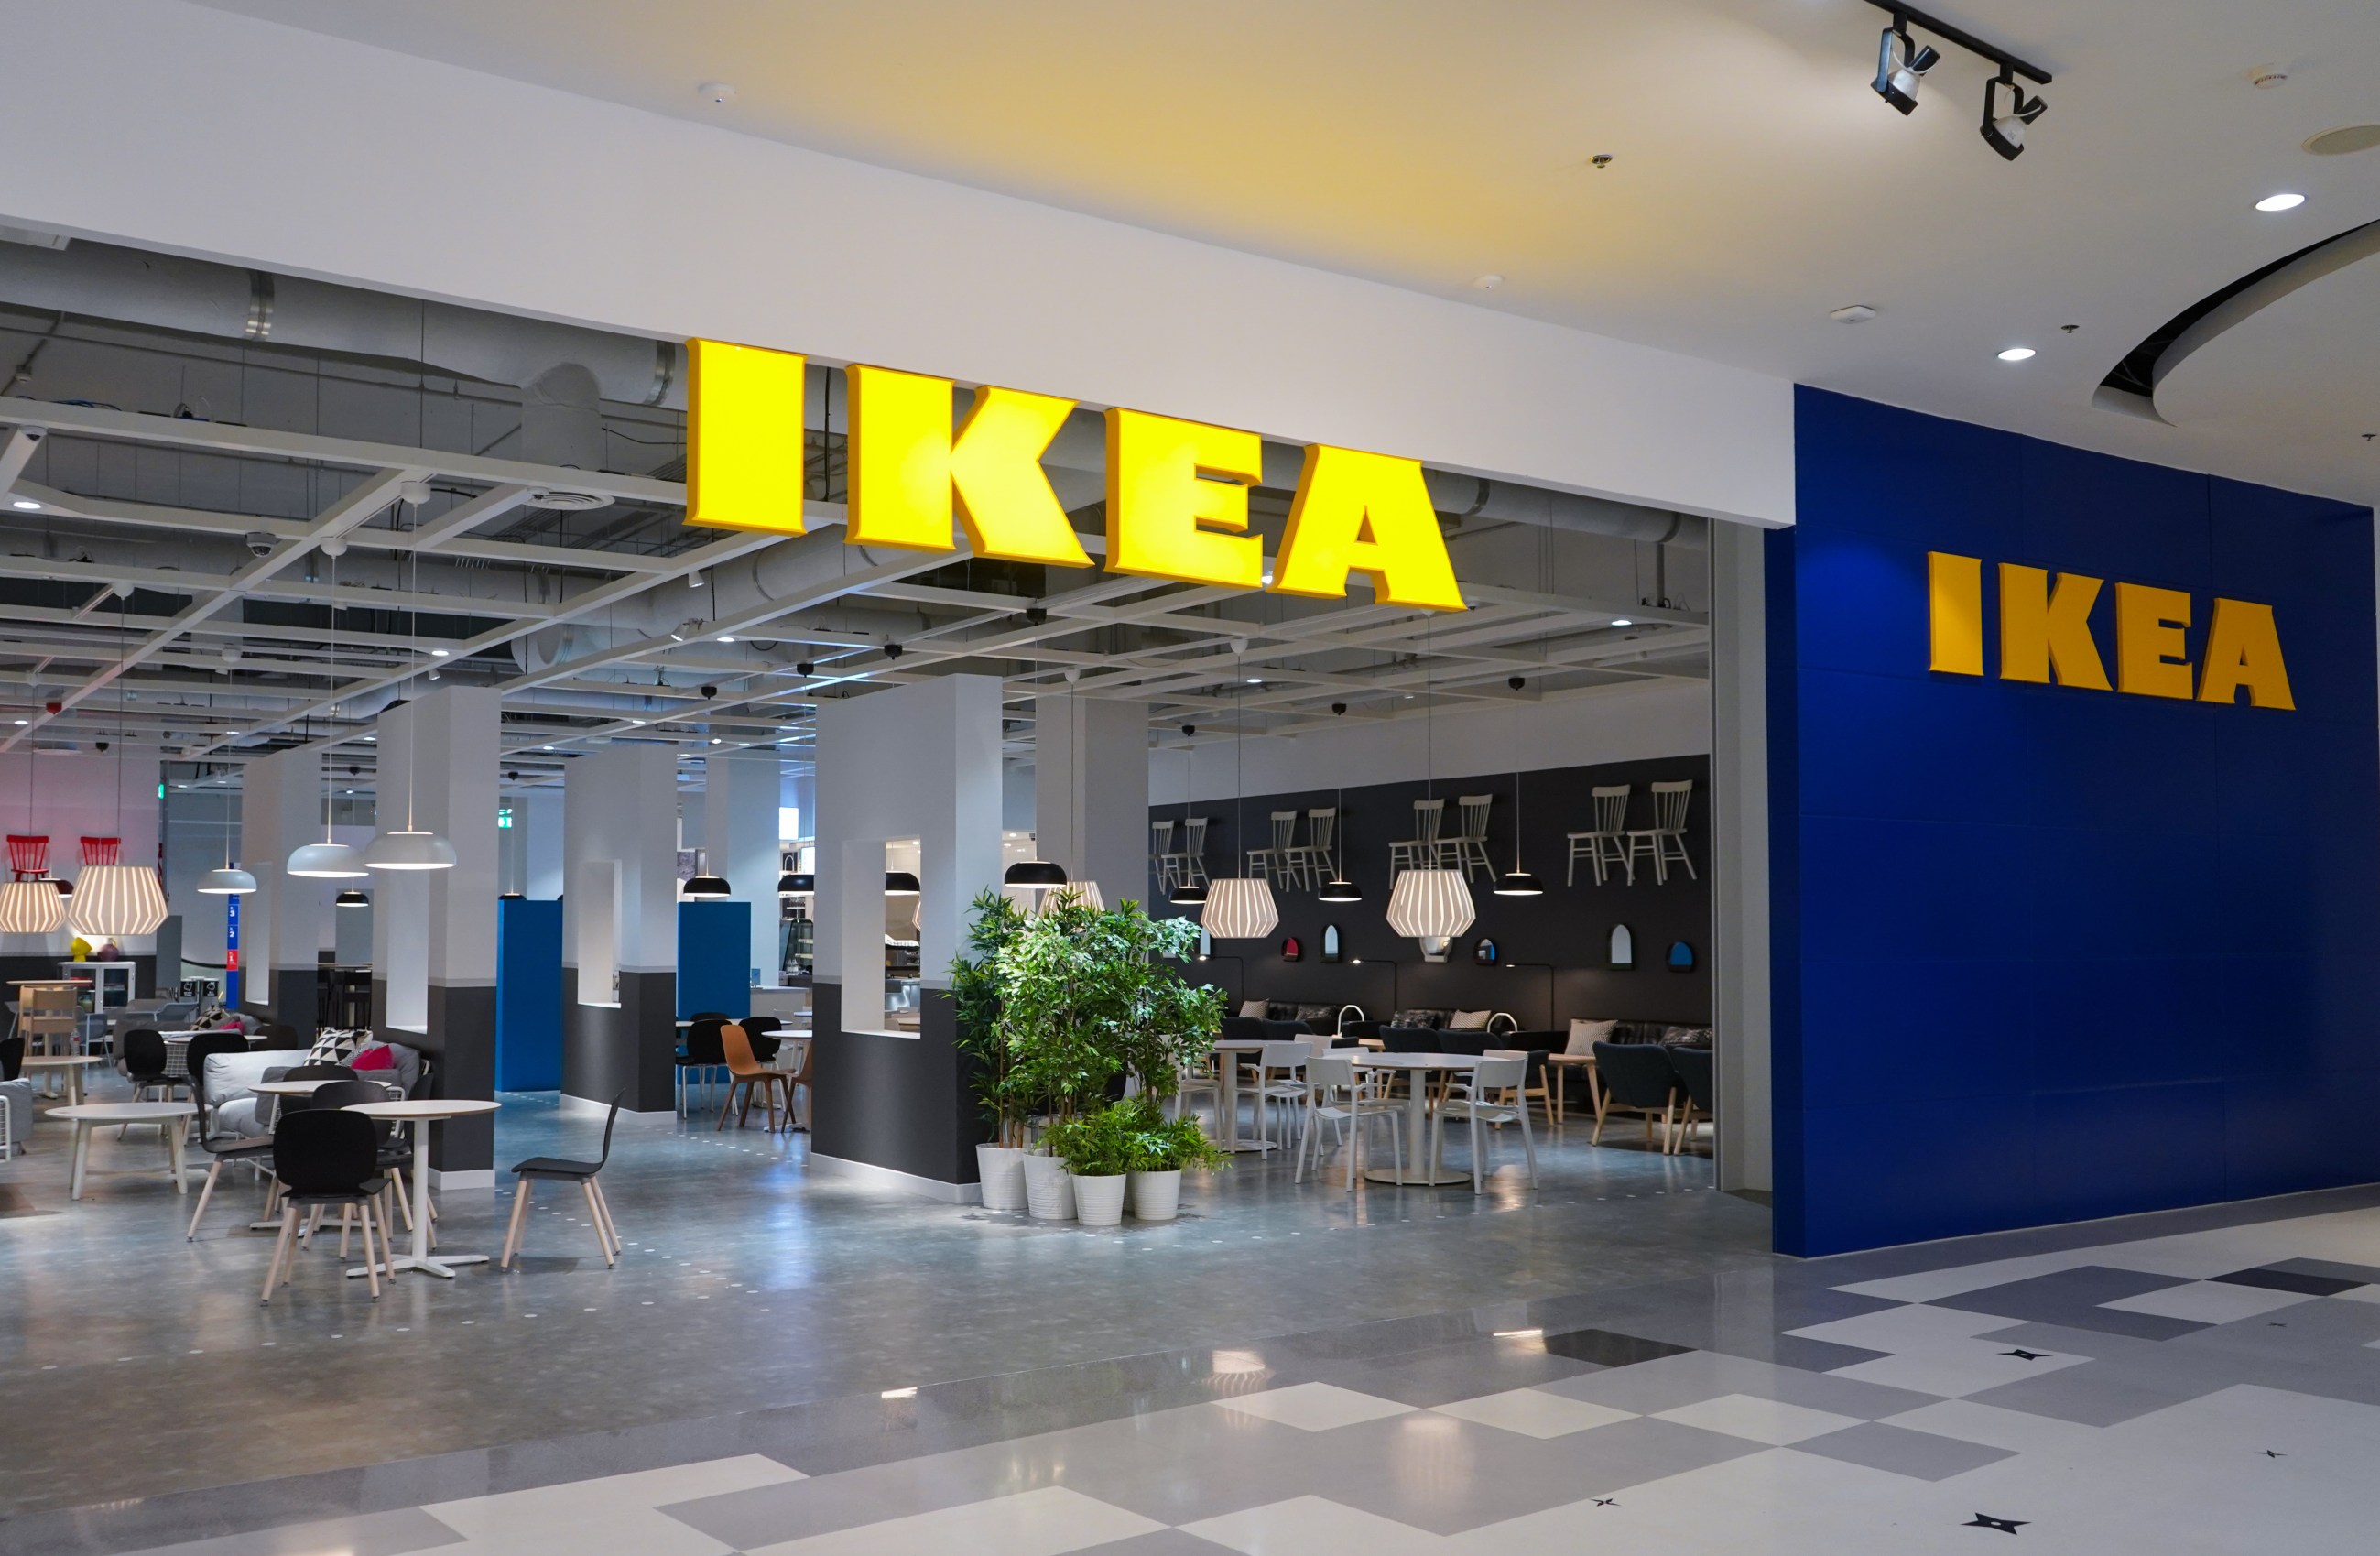 Únete a IKEA Family y te regalan 10€ para tu primera compra